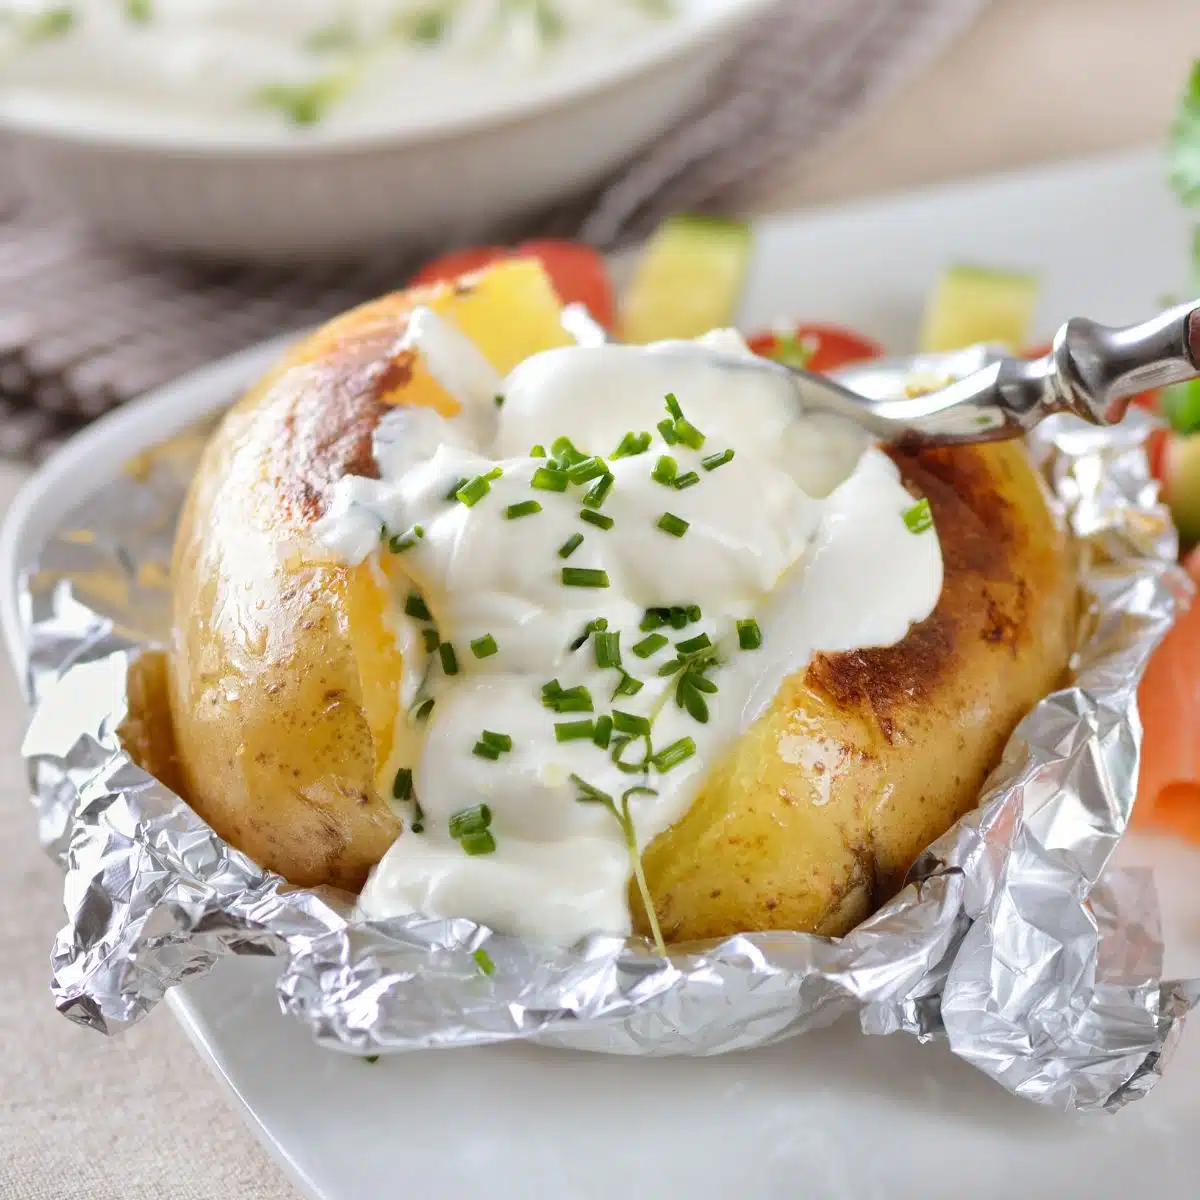 Kvadratna slika koja prikazuje pečeni krumpir na bijelom tanjuru, s kiselim vrhnjem i vlascem.